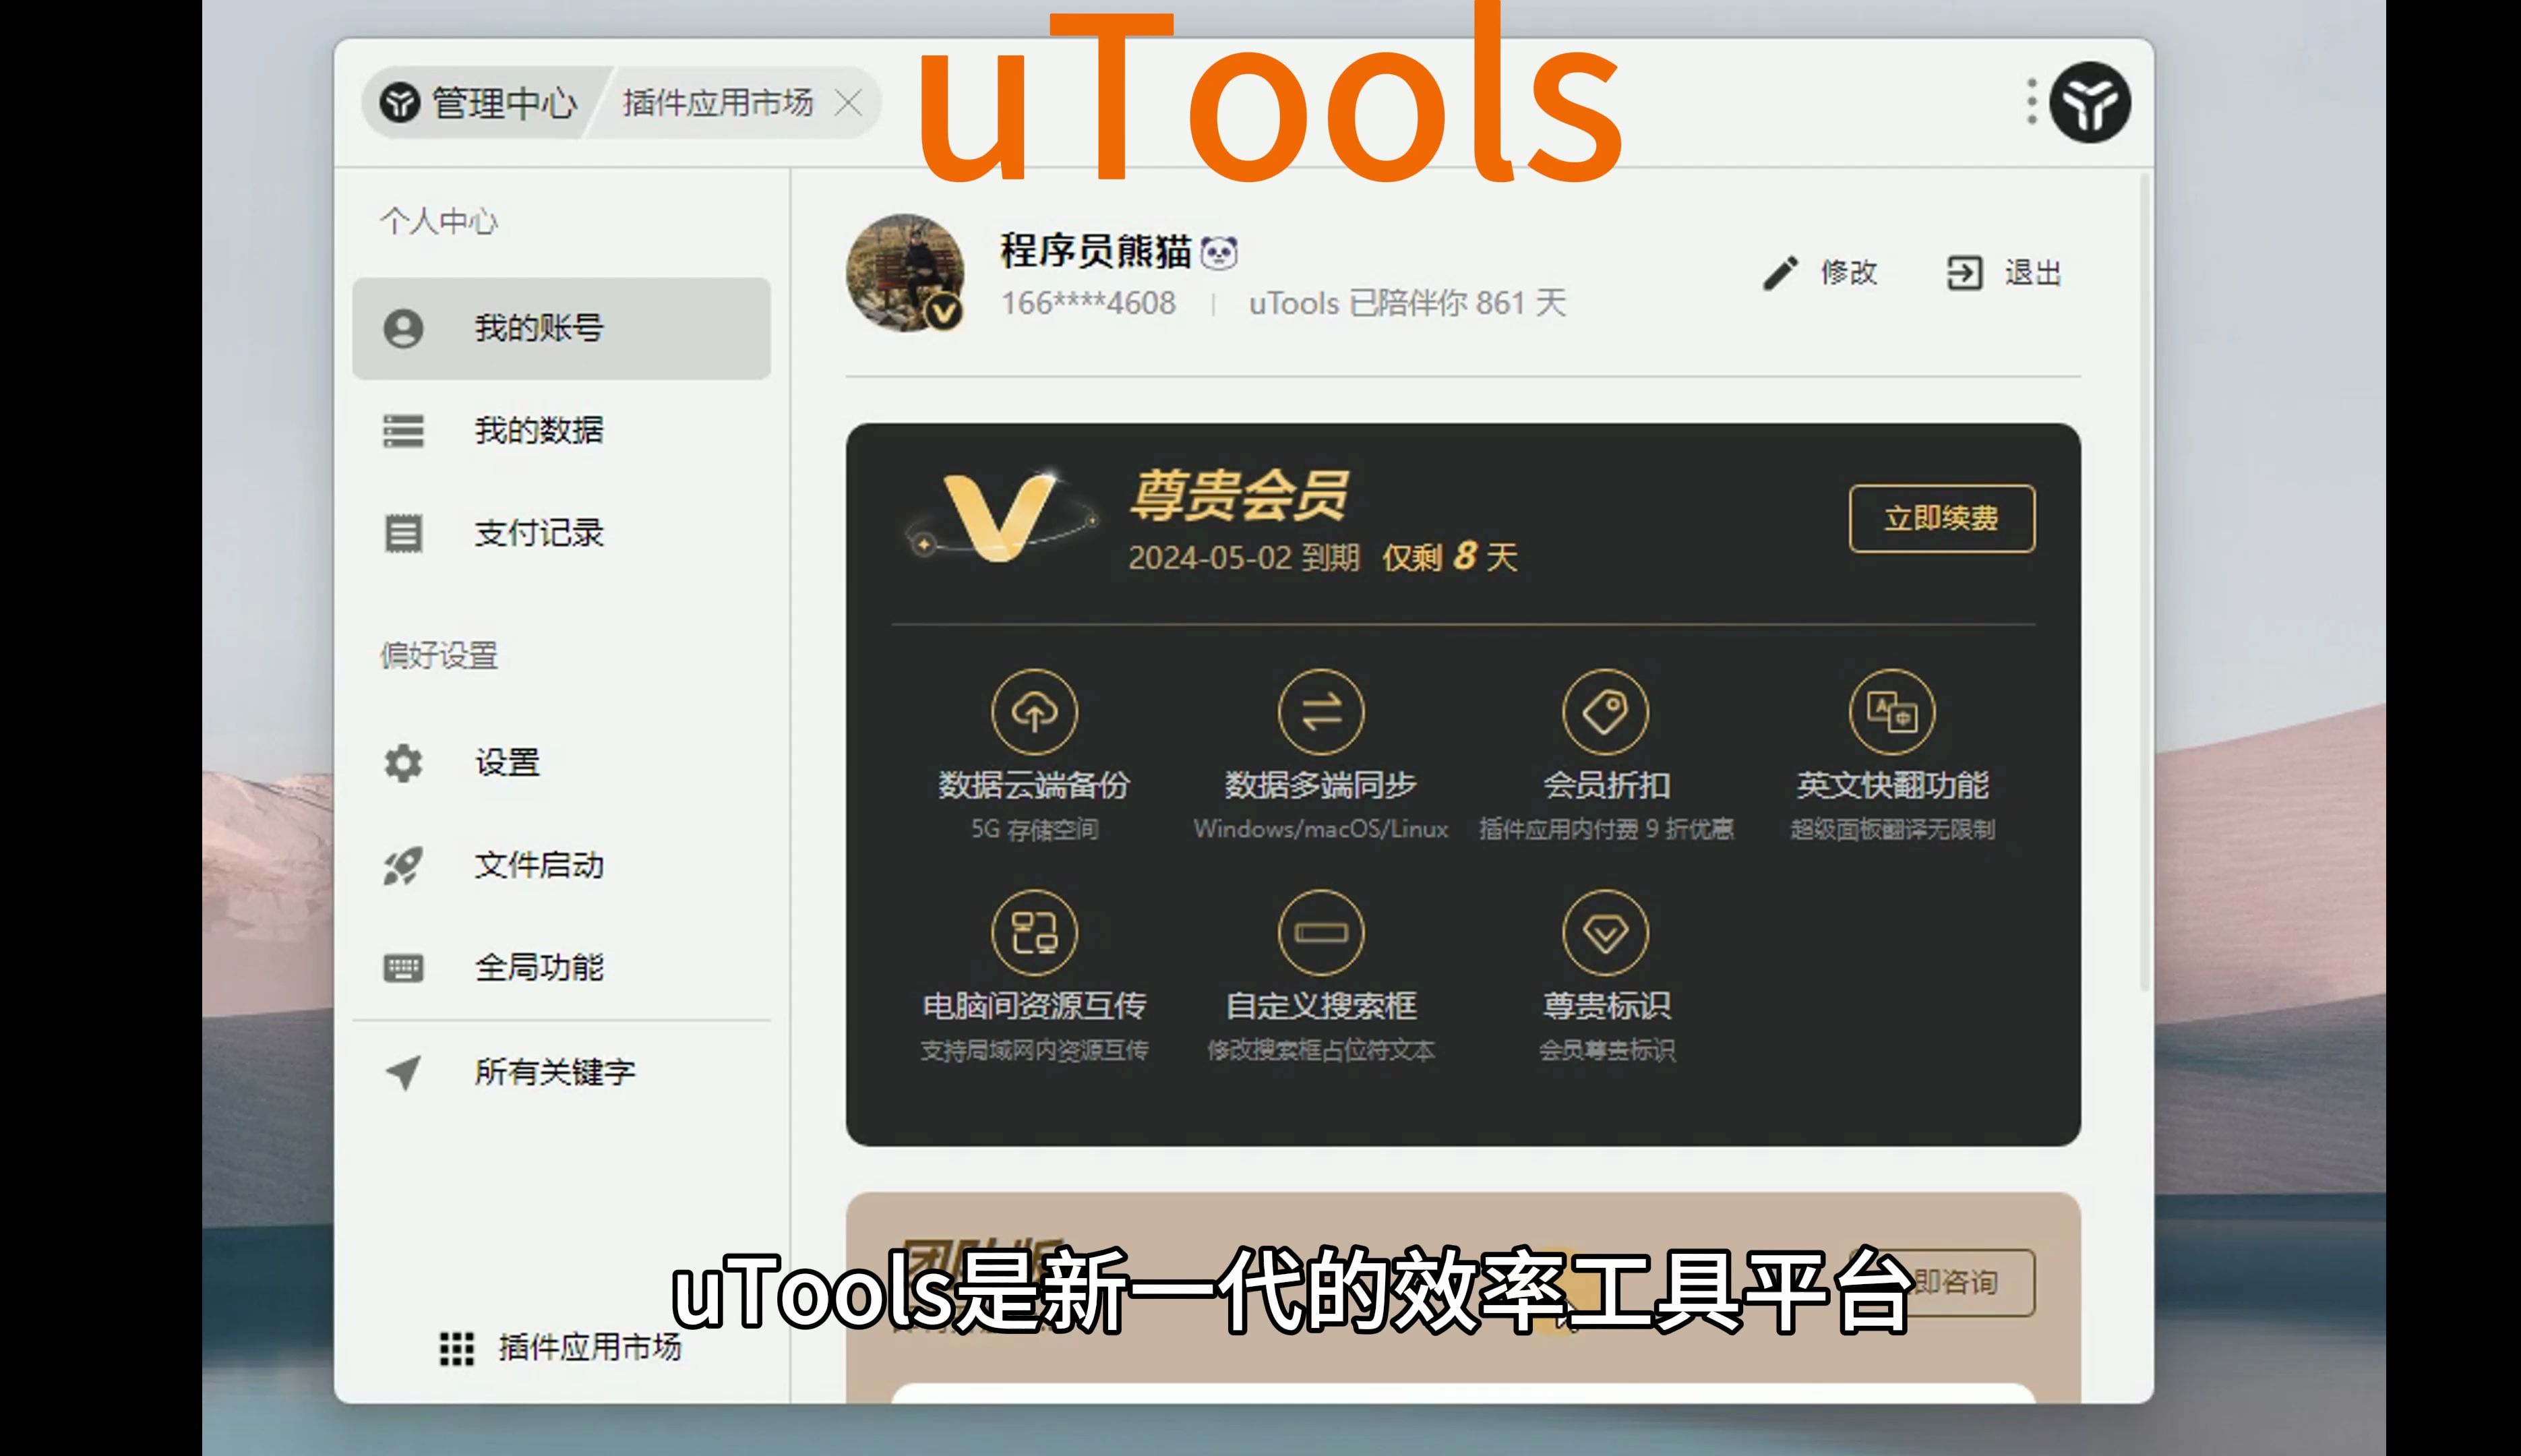 uTools是新一代的效率工具平台